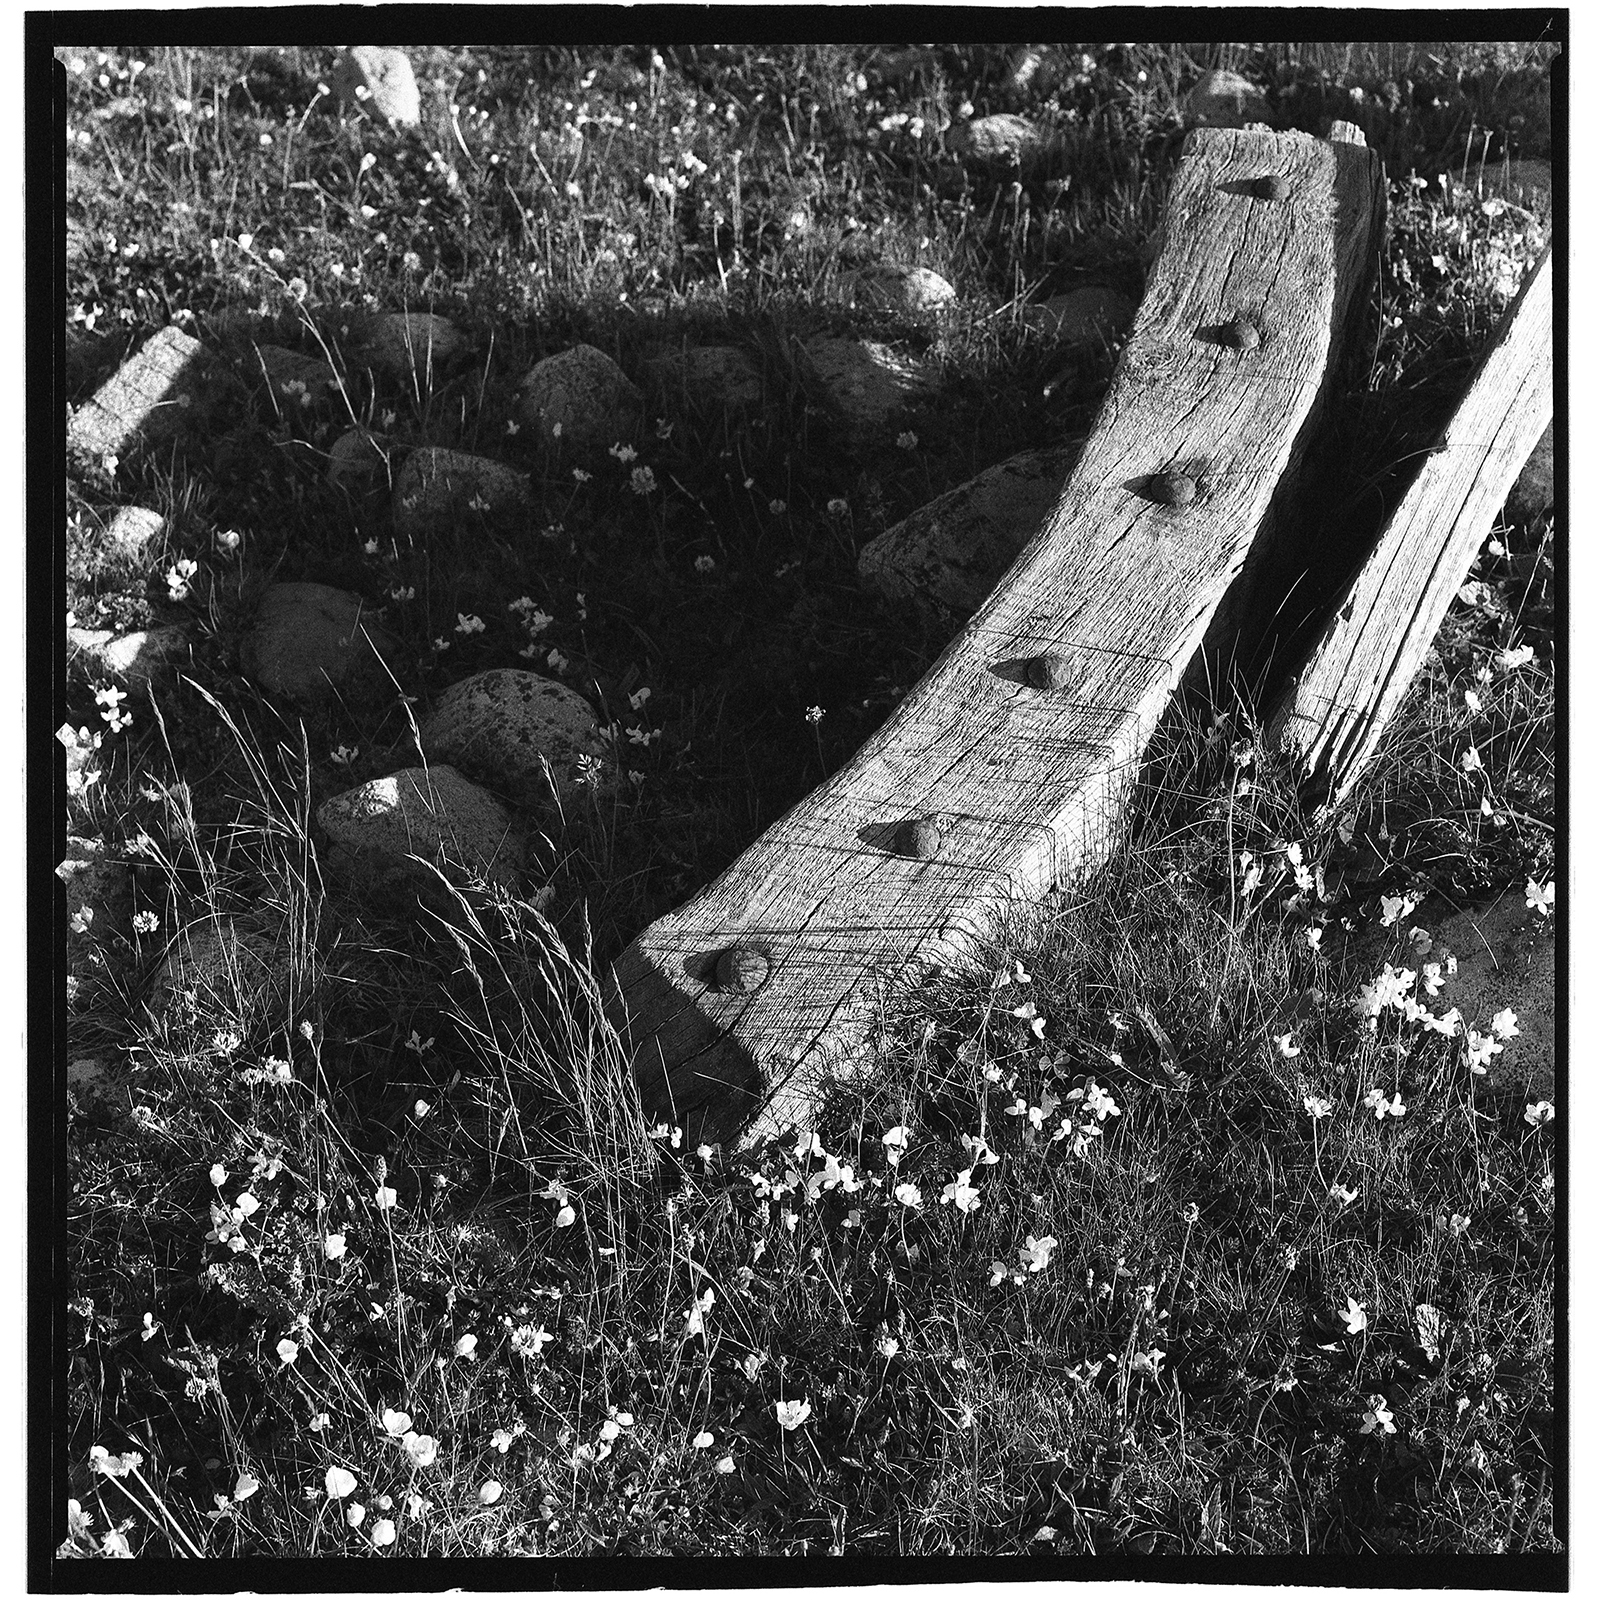 Boat wood washed up on Feenish Island, Connemara